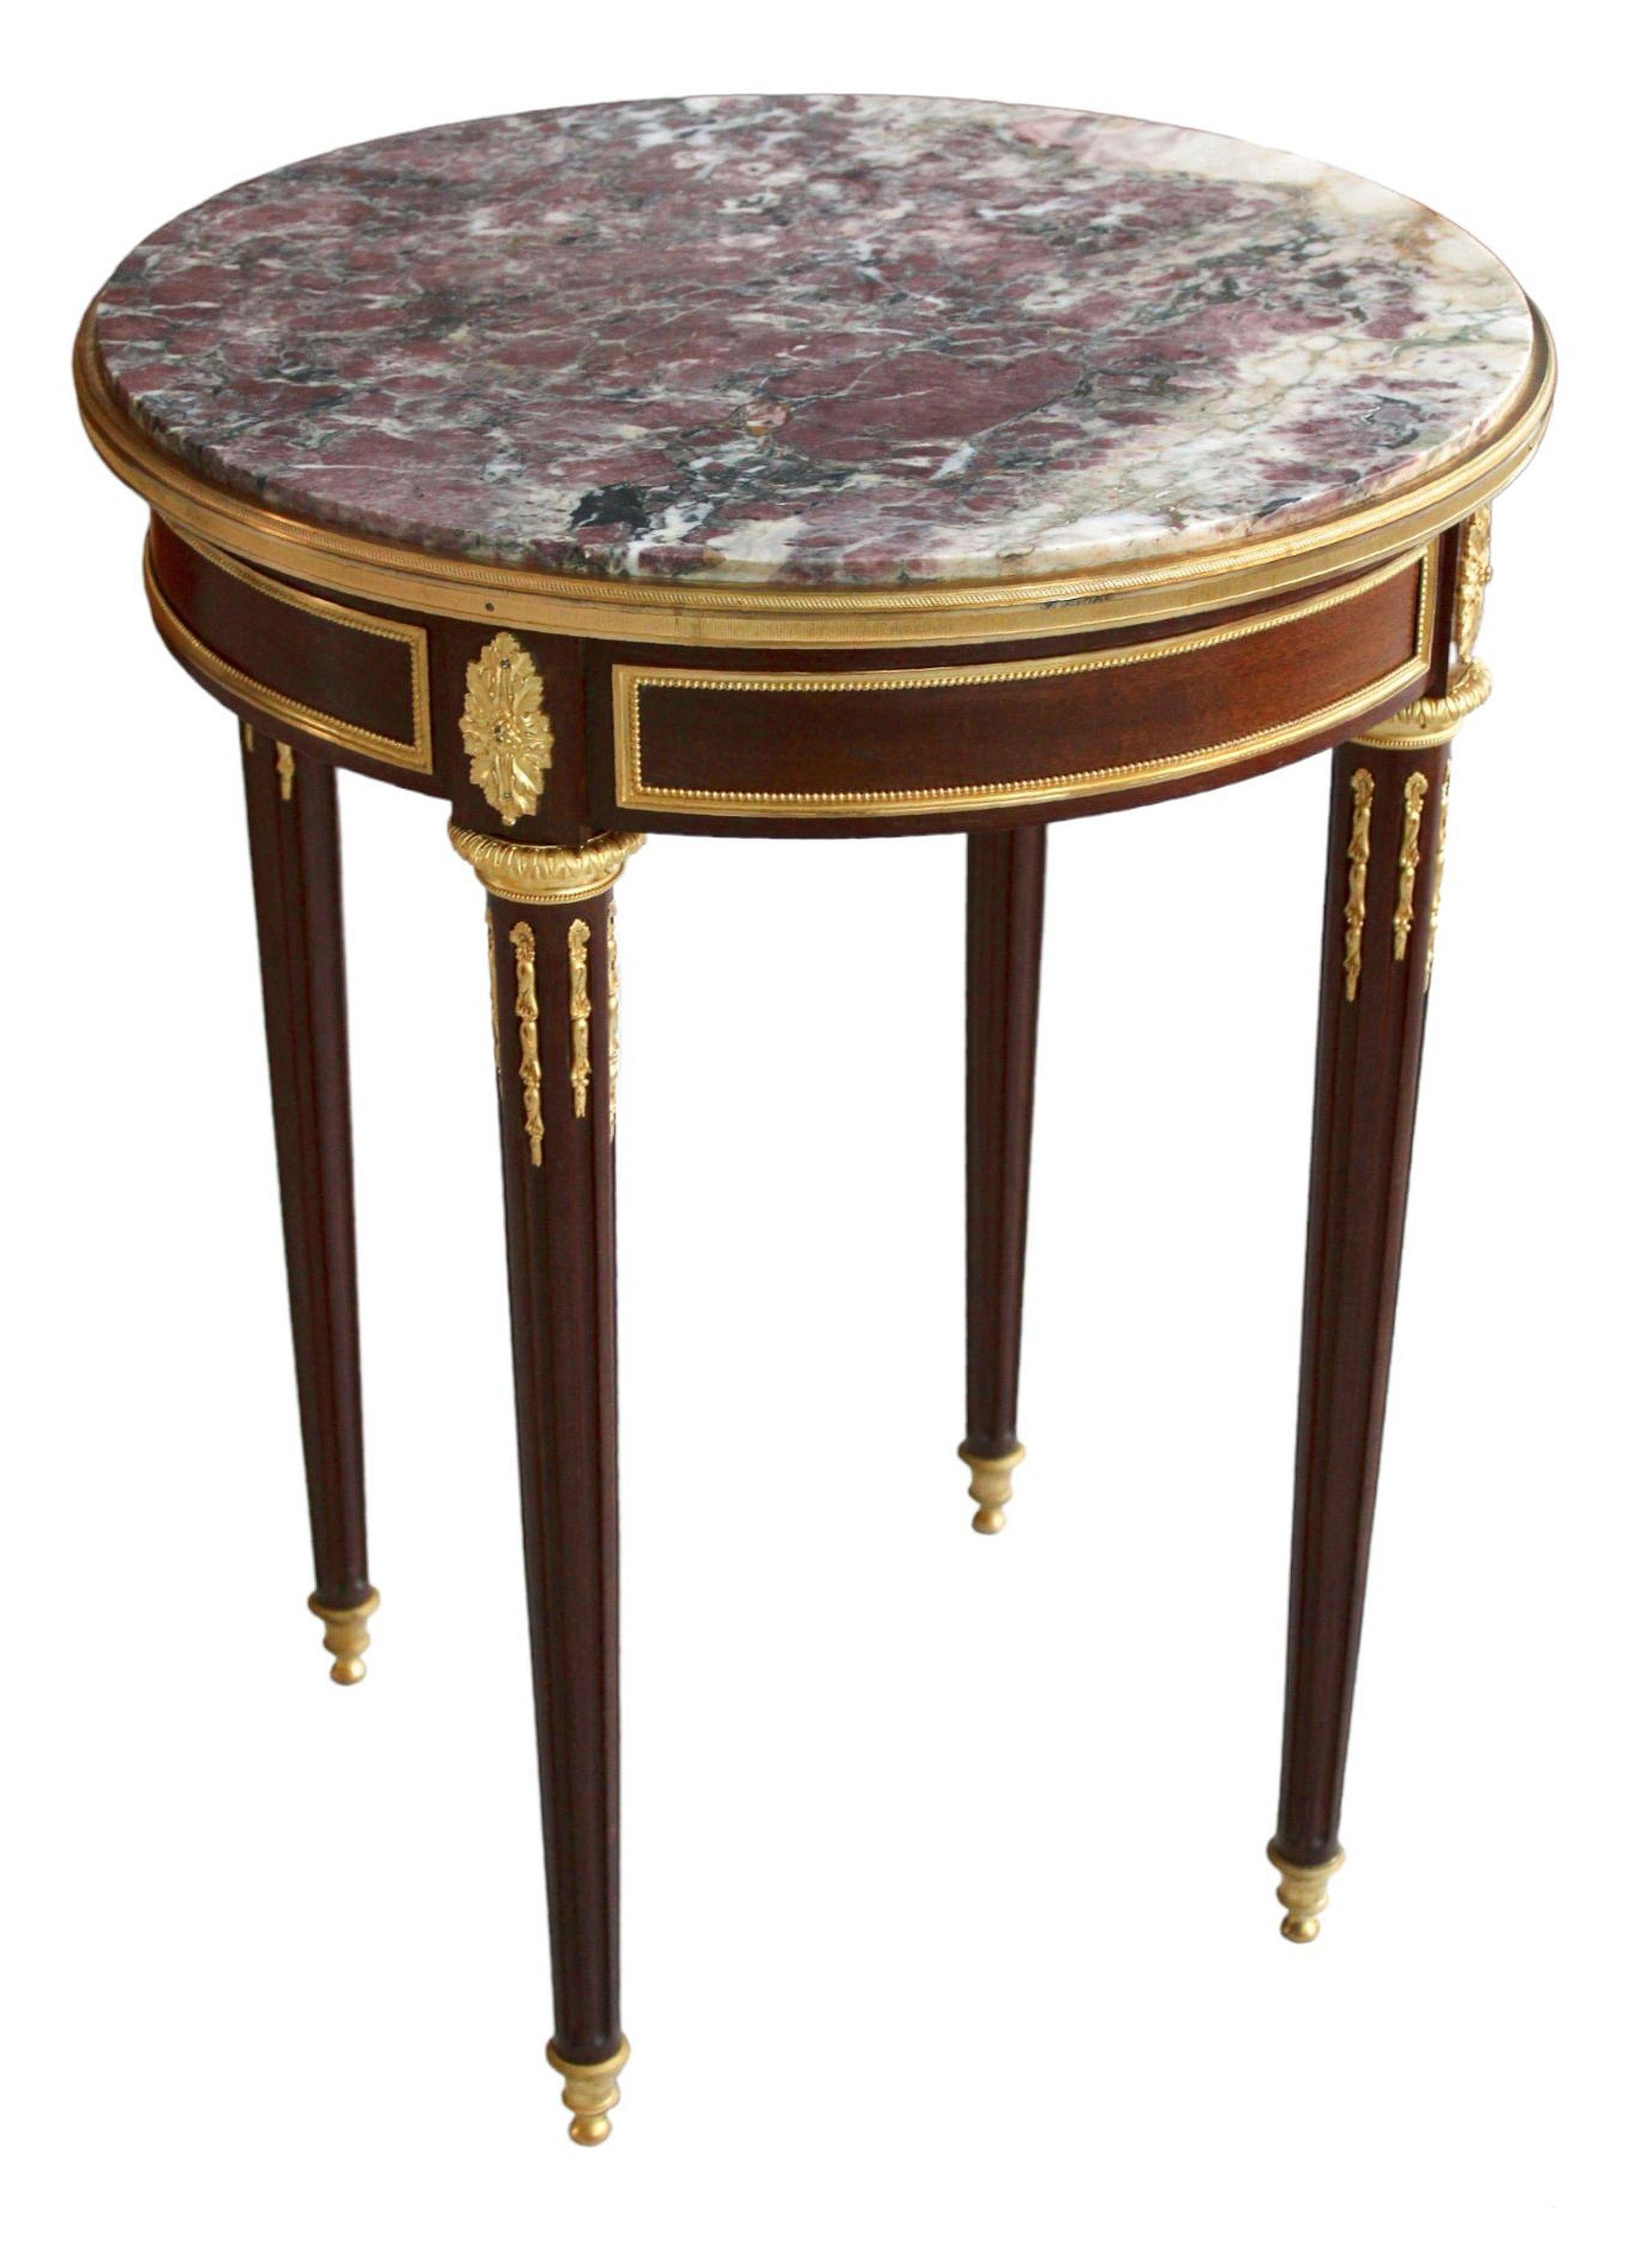 Francis Linke (1855-1946)

Table en chêne, plaquée d'acajou, plateau en marbre, bronze doré, pieds en bois d'acajou, 75,5 cm ; p 59 cm